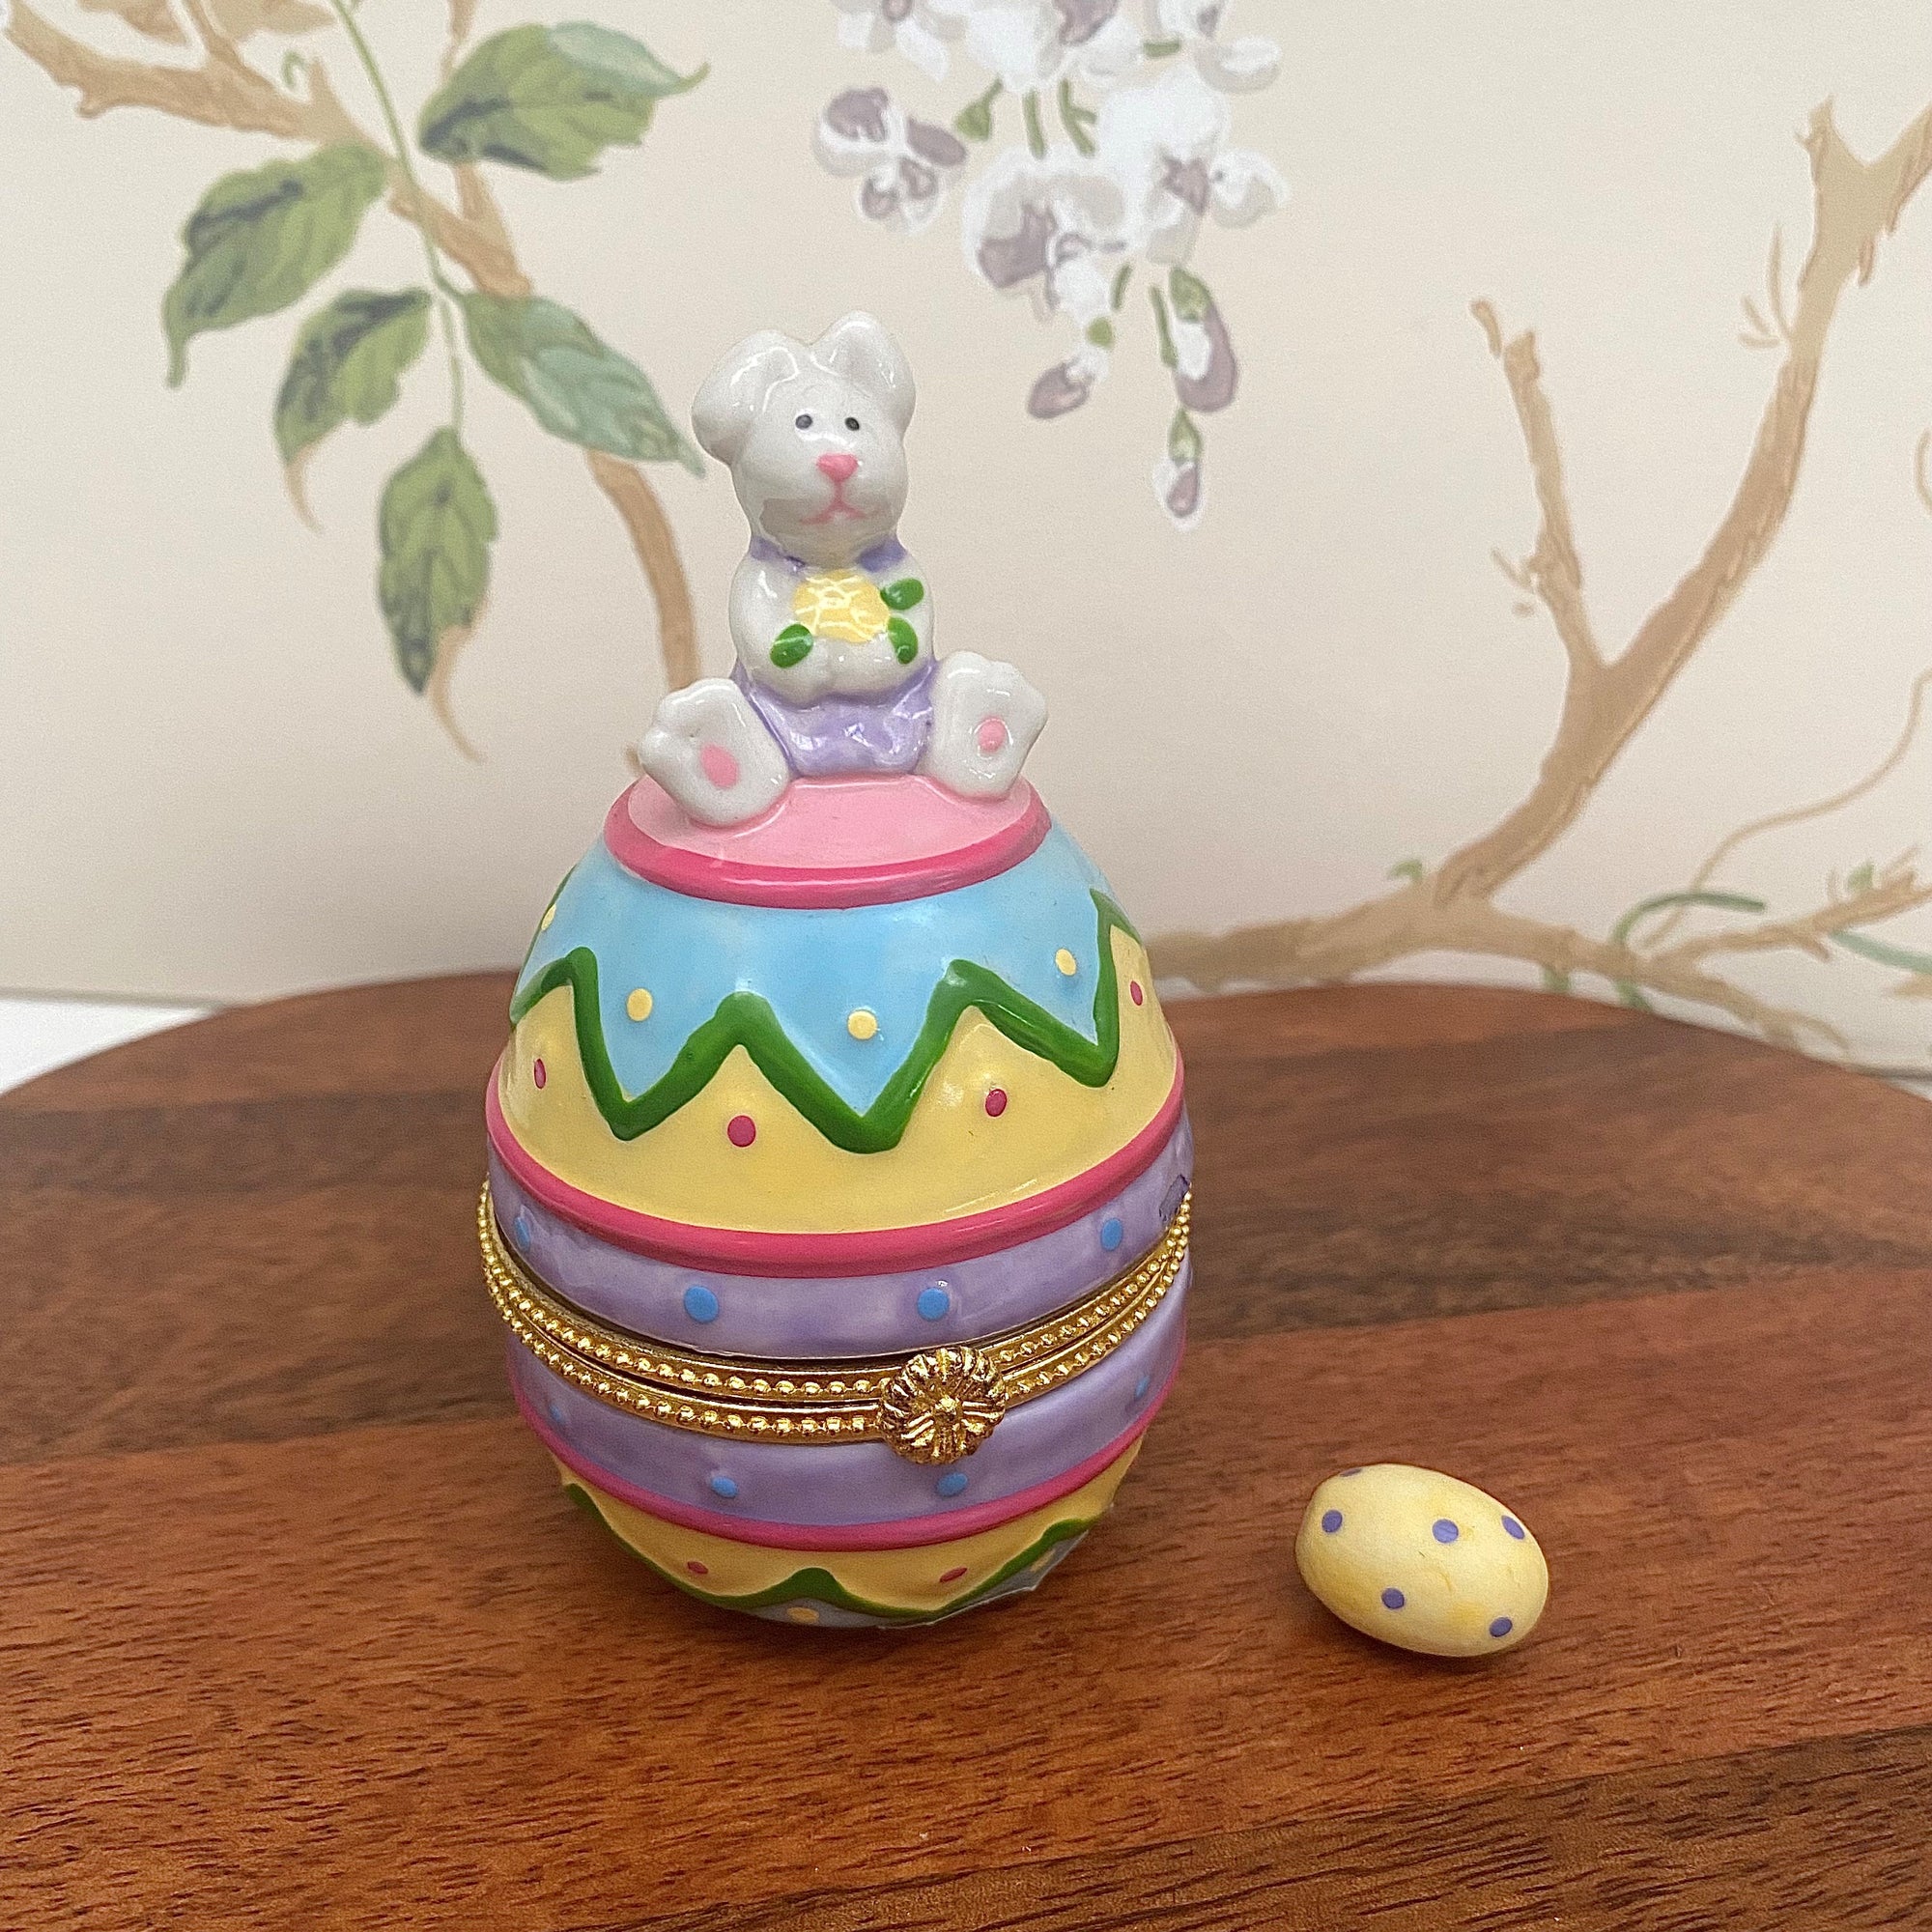 Rabbit sat on Easter egg ceramic box with hidden egg trinket inside.